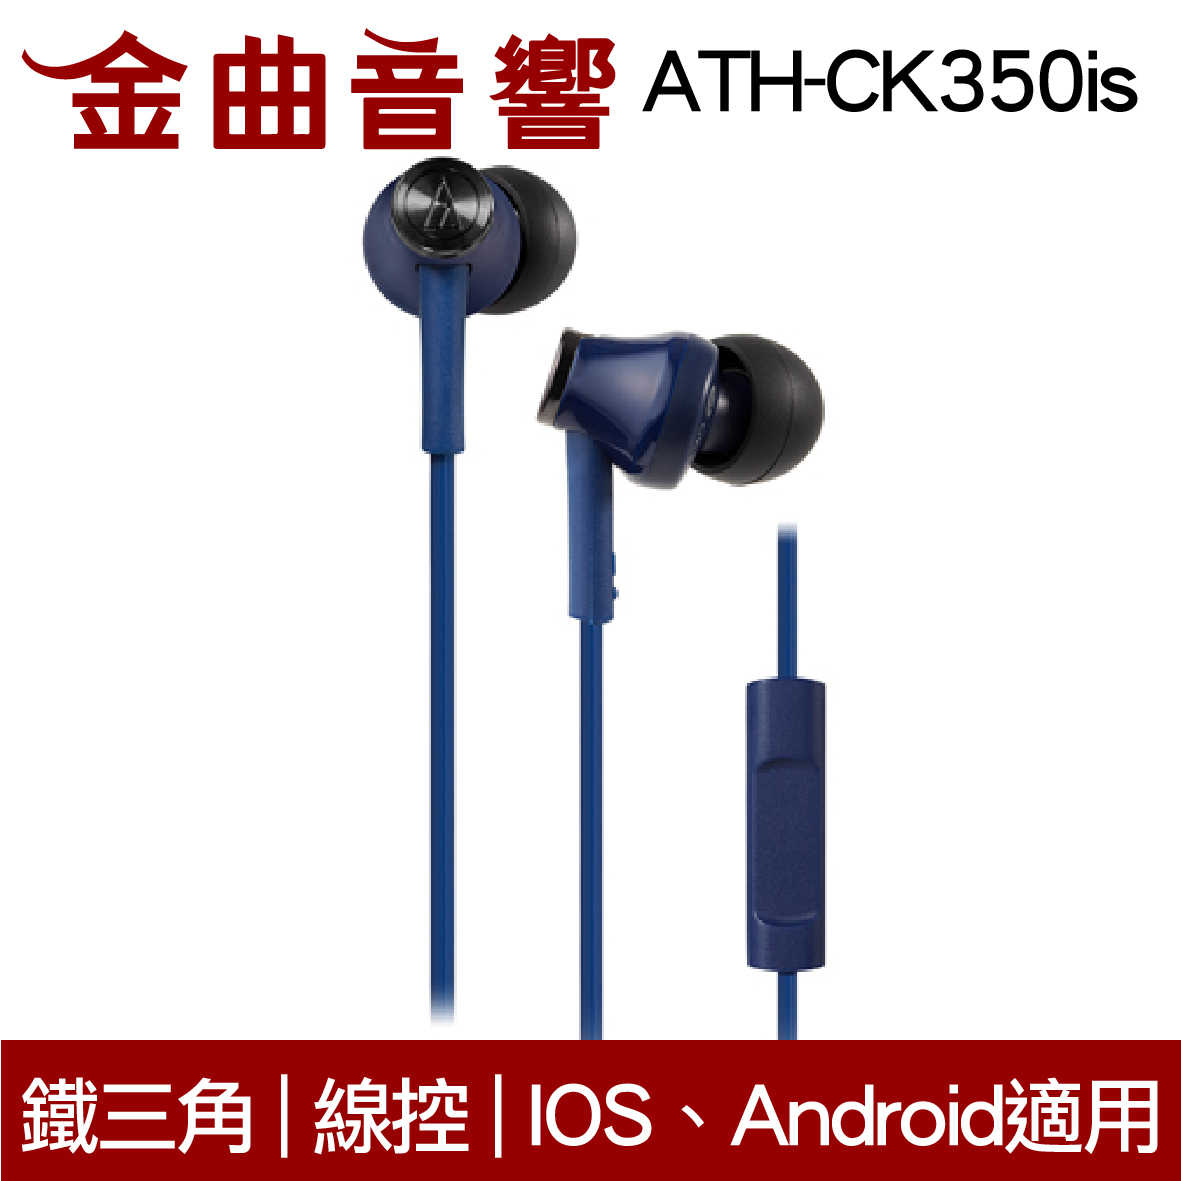 鐵三角 ATH-CK350iS 多色可選 線控耳道式耳機 IPhone IOS安卓適用 | 金曲音響